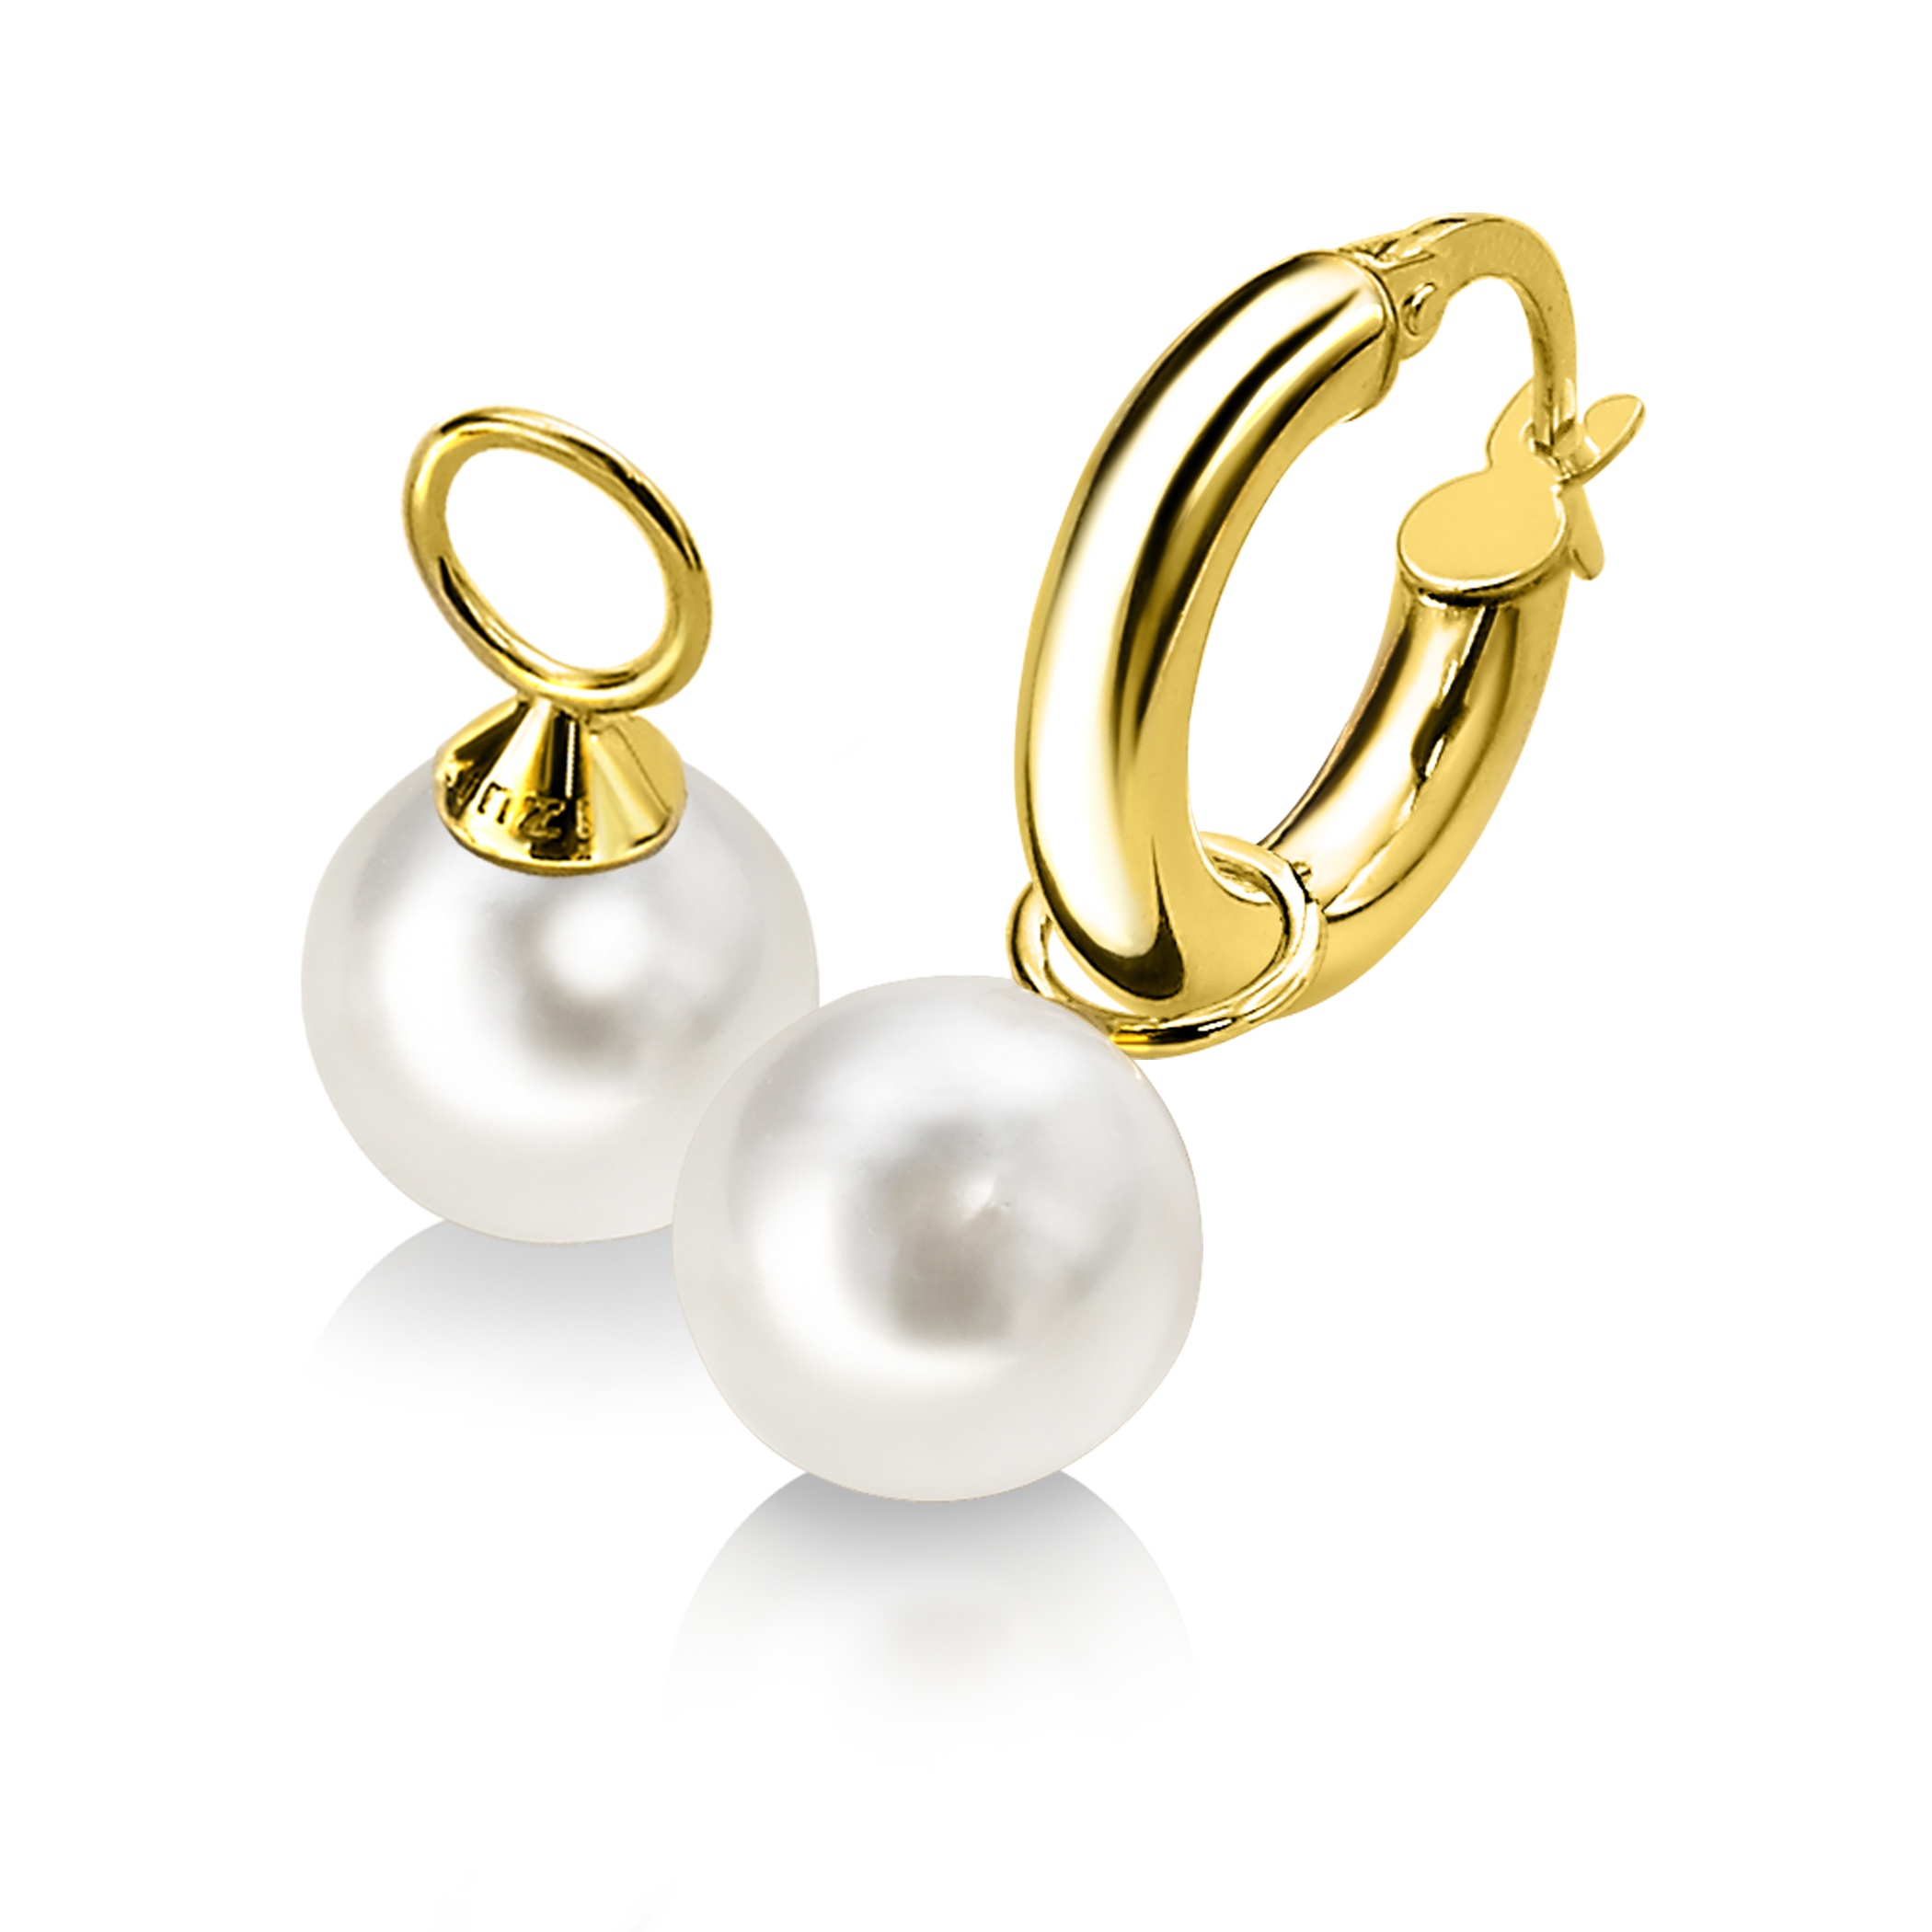 ZINZI 14K Gold Earrings Pendants Pearl White 8mm ZGCH144 (excl. hoop earrings)